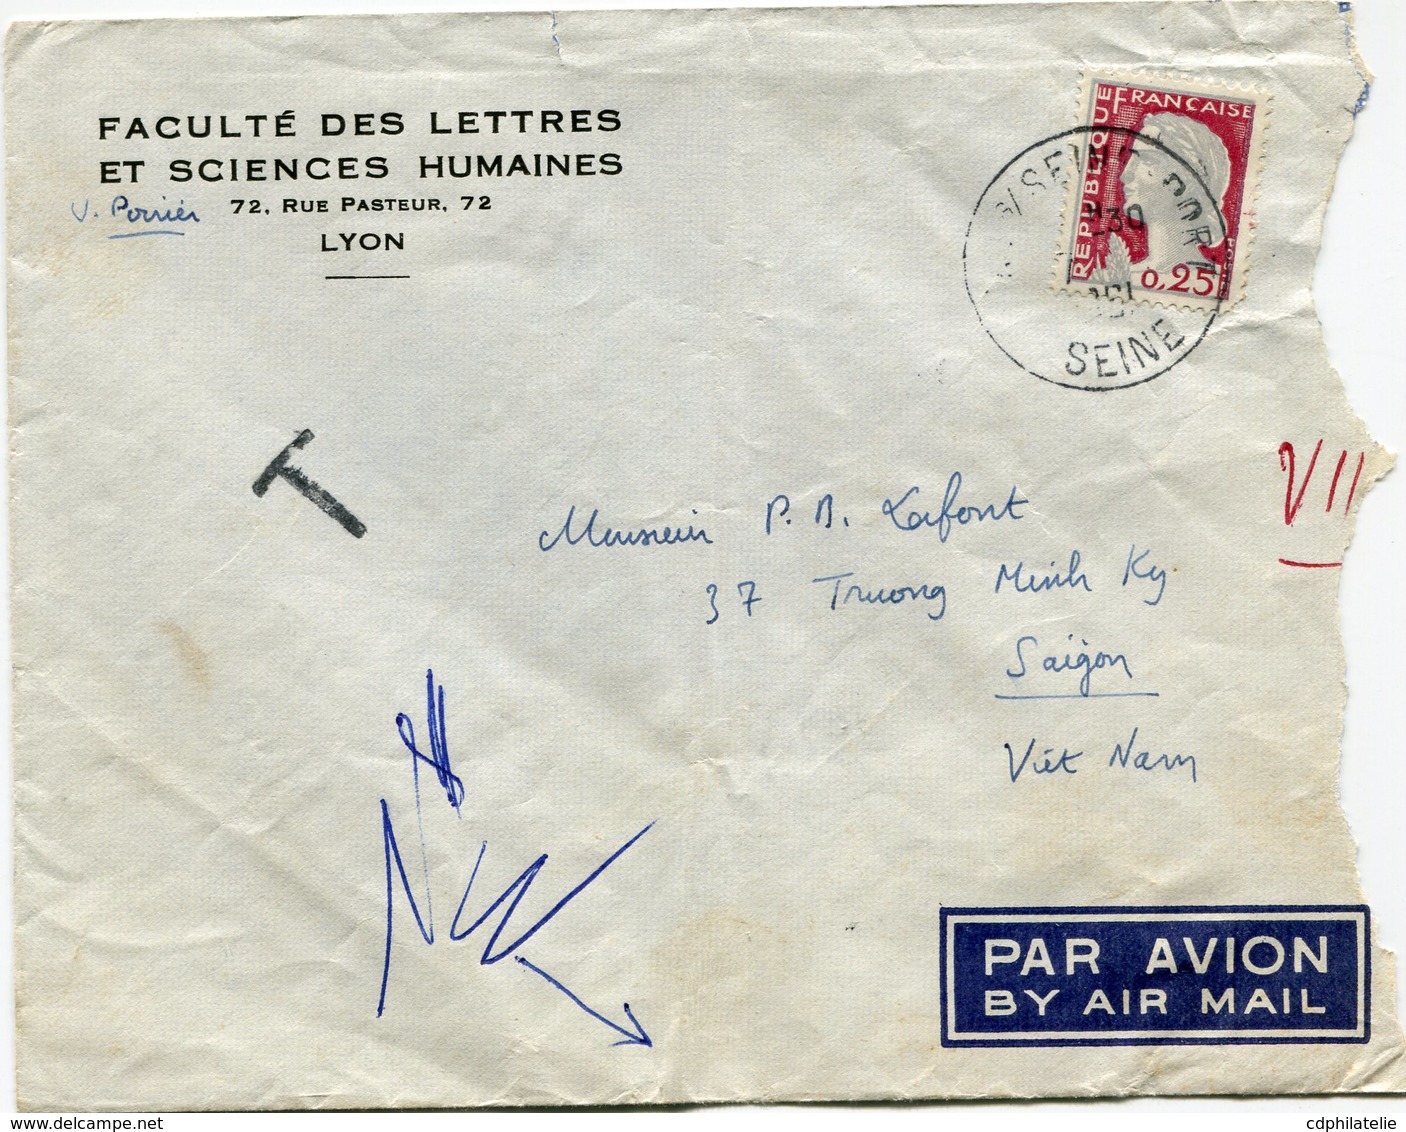 FRANCE LETTRE PAR AVION DEPART ? S/SEINE PORT ?-?-1961 SEINE TAXEE A L'ARRIVEE A SAIGON LE 11-?-1961 VIETNAM - 1960 Marianne (Decaris)